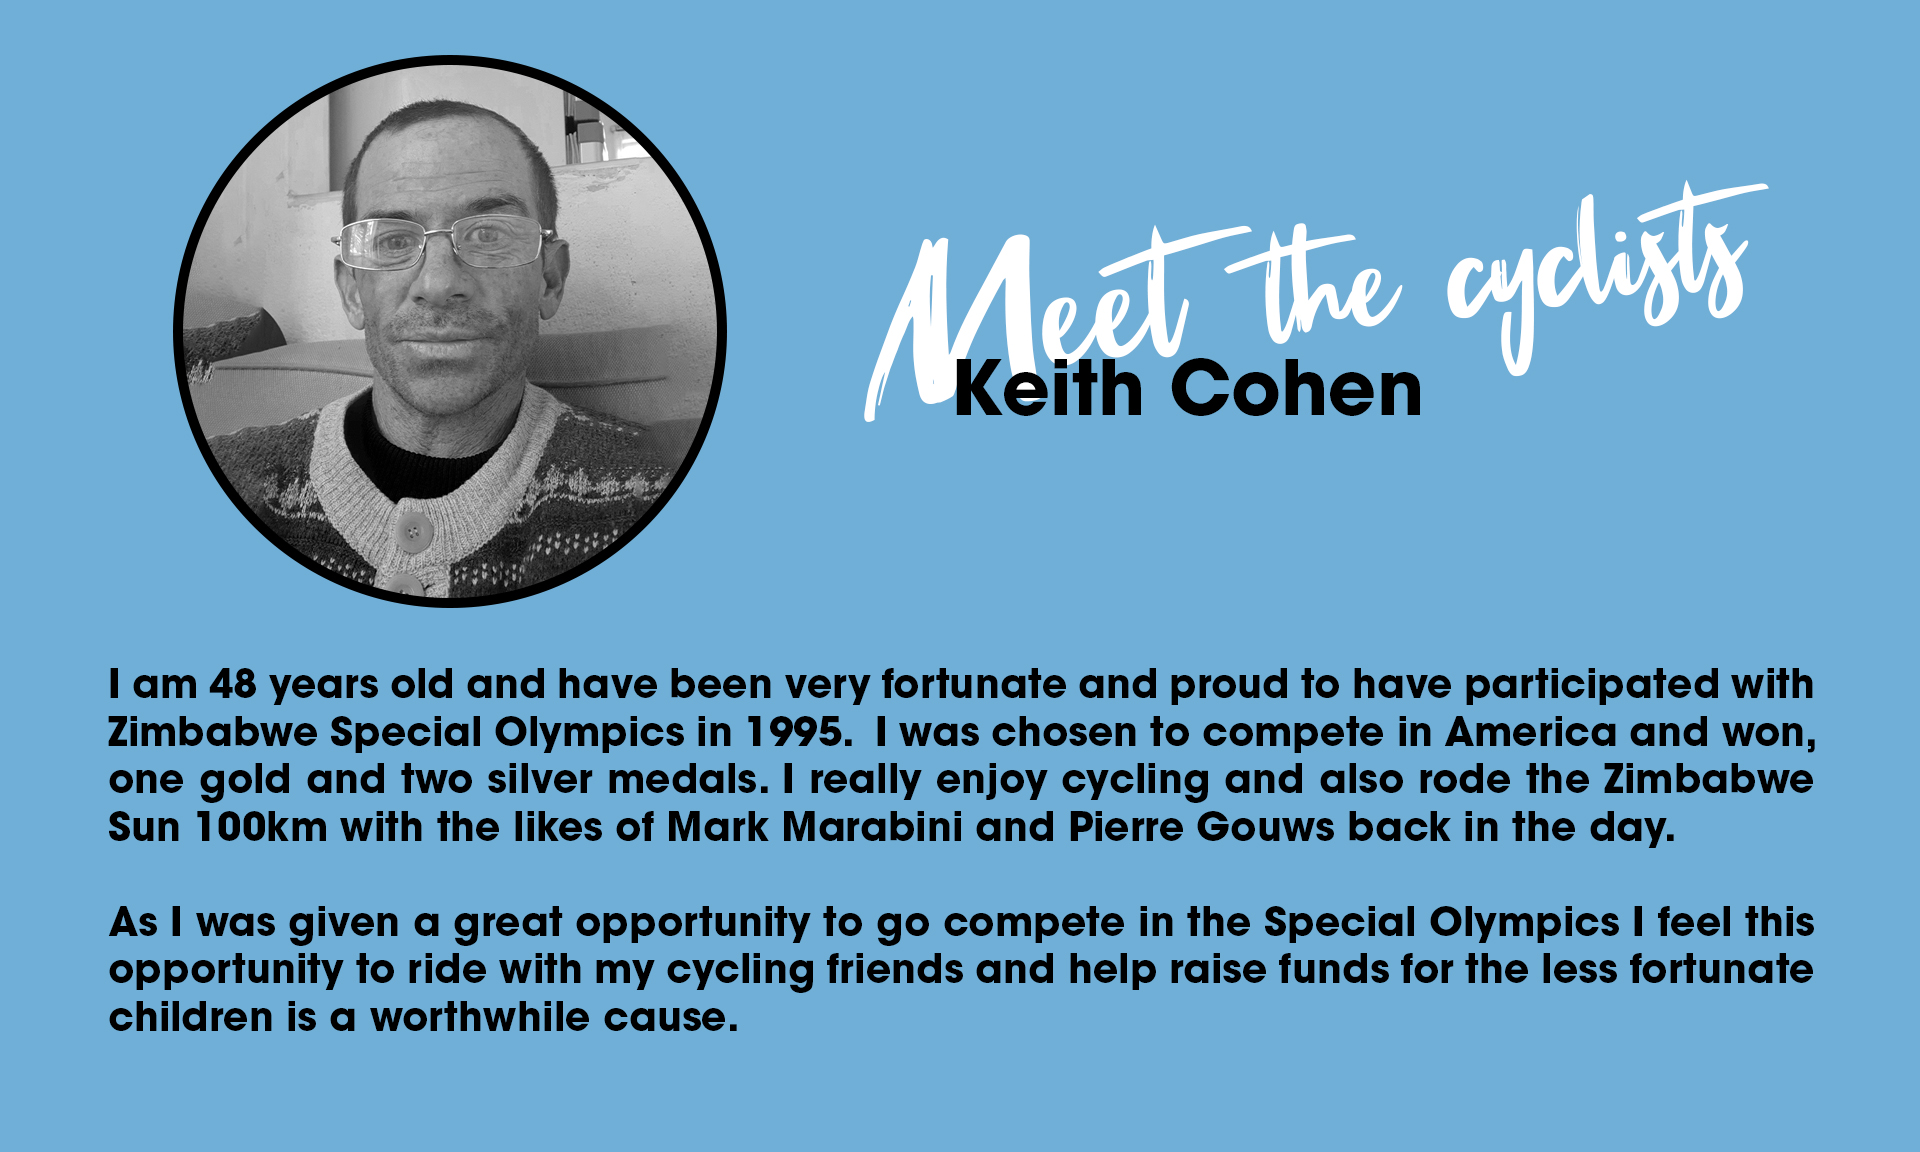 Keith Cohen